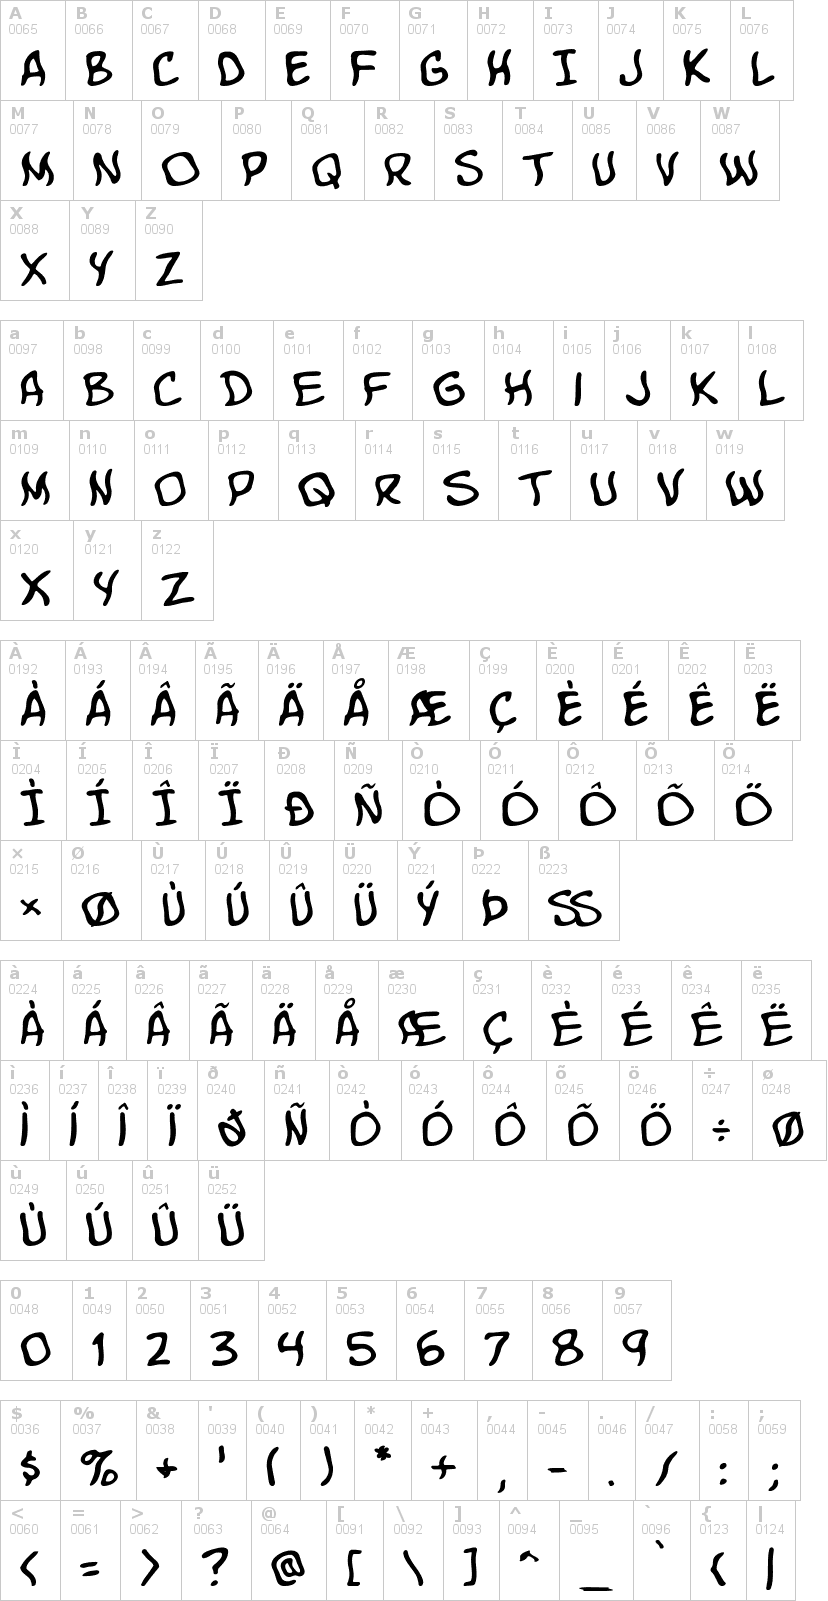 Lettere dell'alfabeto del font komika-poster con le quali è possibile realizzare adesivi prespaziati